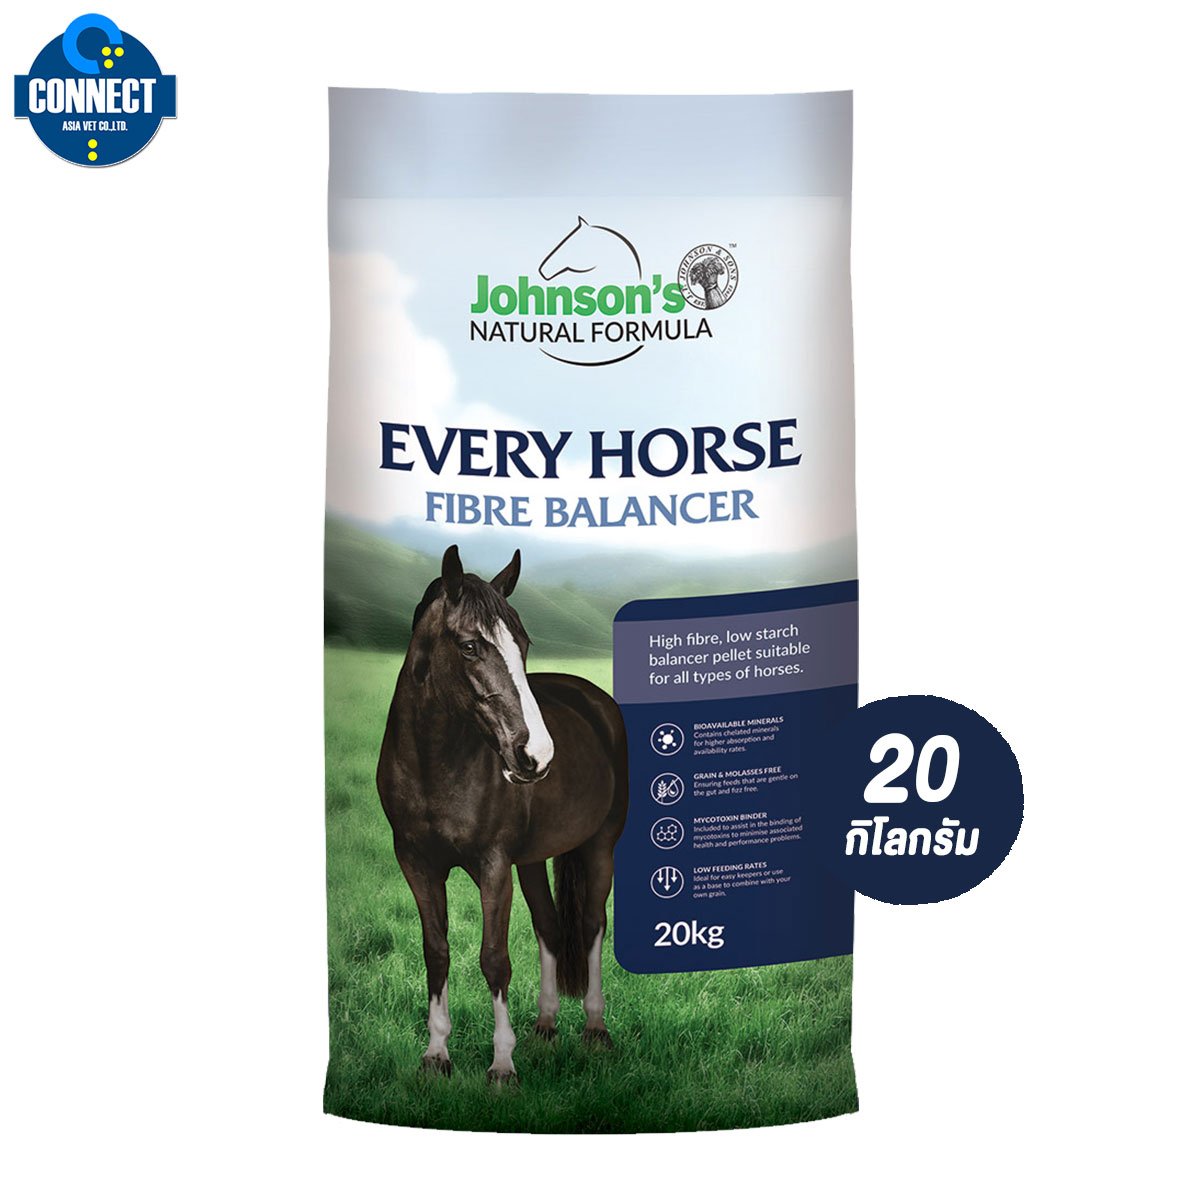 อาหารม้า - Johnson’s EVERY HORSE FIBRE BALANCER 20 kg. สูตร เพิ่มเยื่อใยอาหาร ช่วดลด ท้องเสีย/ท้องอืด สำหรับม้าทุกประเภท